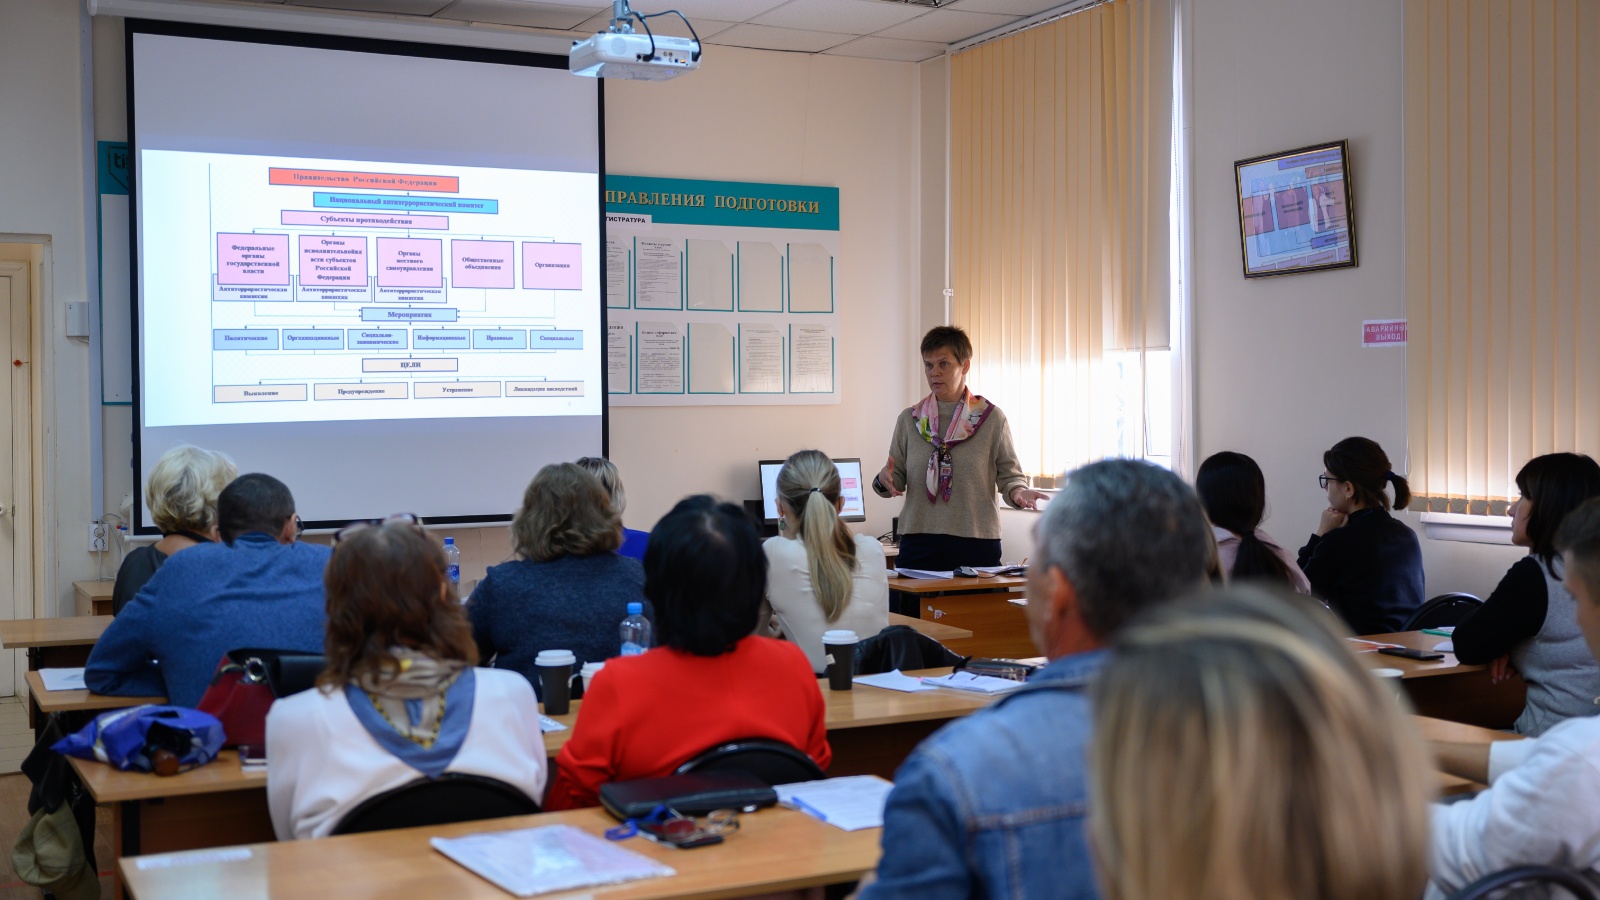 Профессиональное образование. Центр занятости проводит обучение. Ресурсные центры в Татарстане фото.